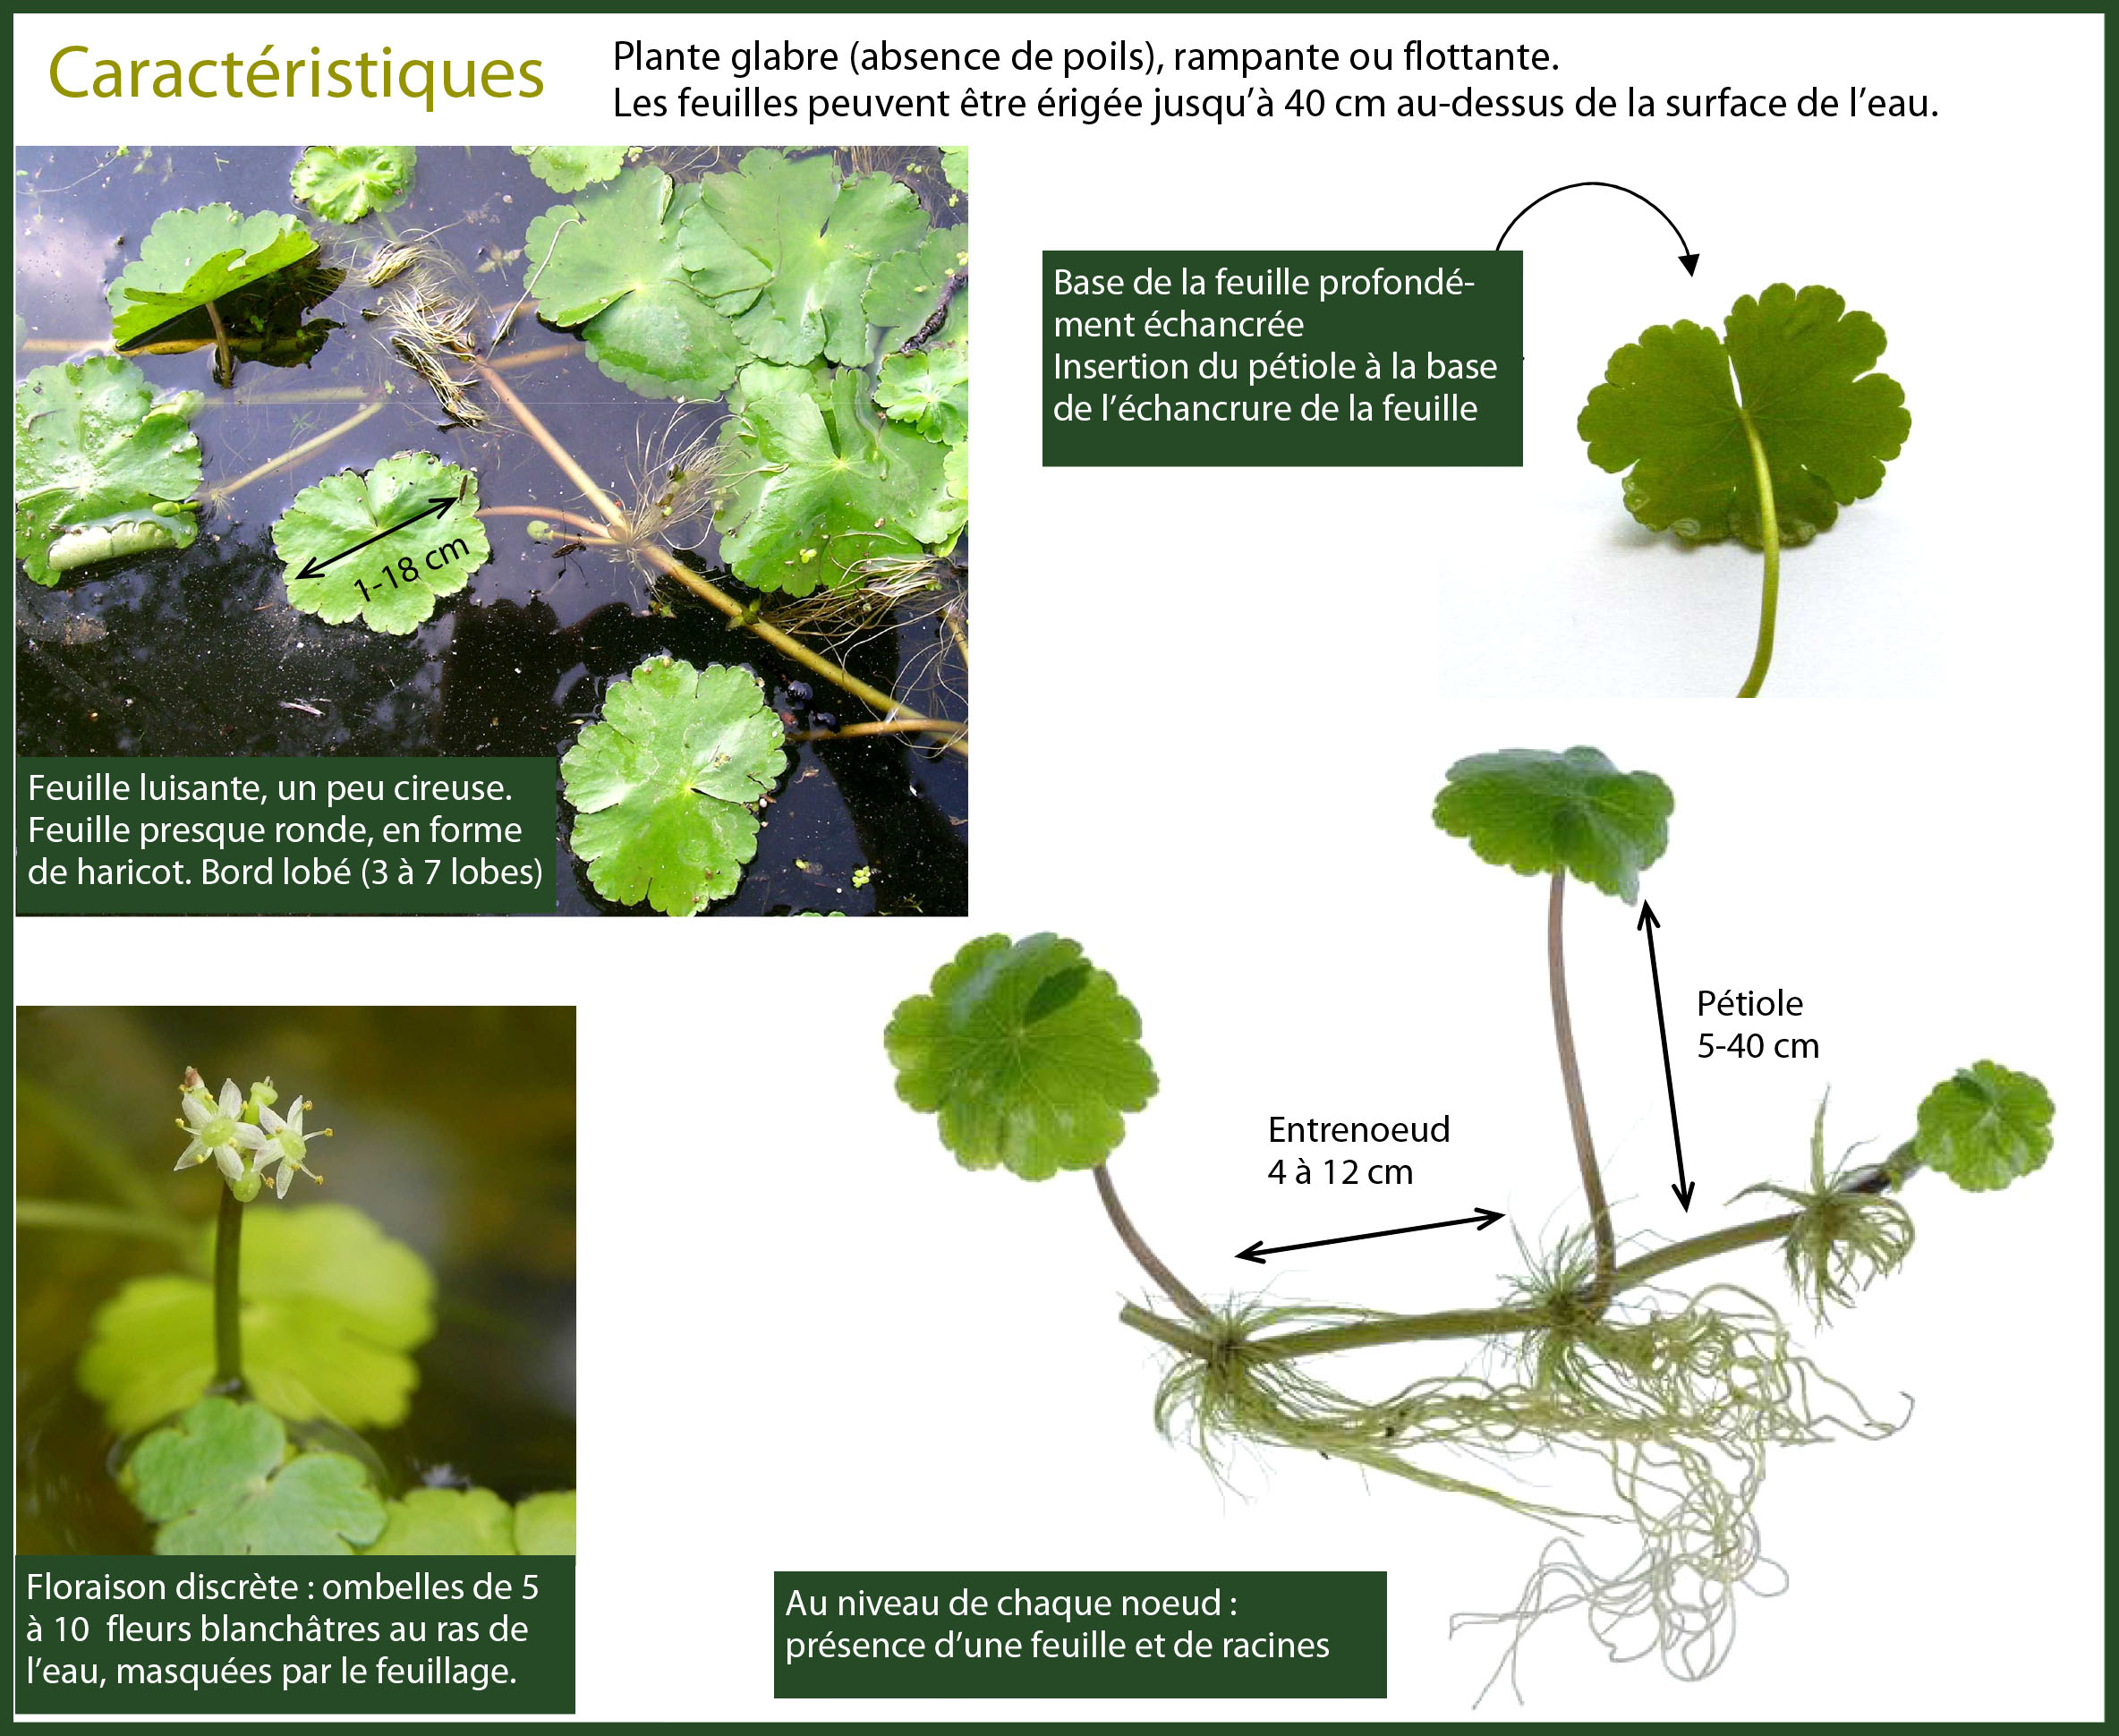 Nouvelle algue invasive sur le Loiret : L'Hydrocotyle fausse-renoncule. |  Le Brochet Olivetain